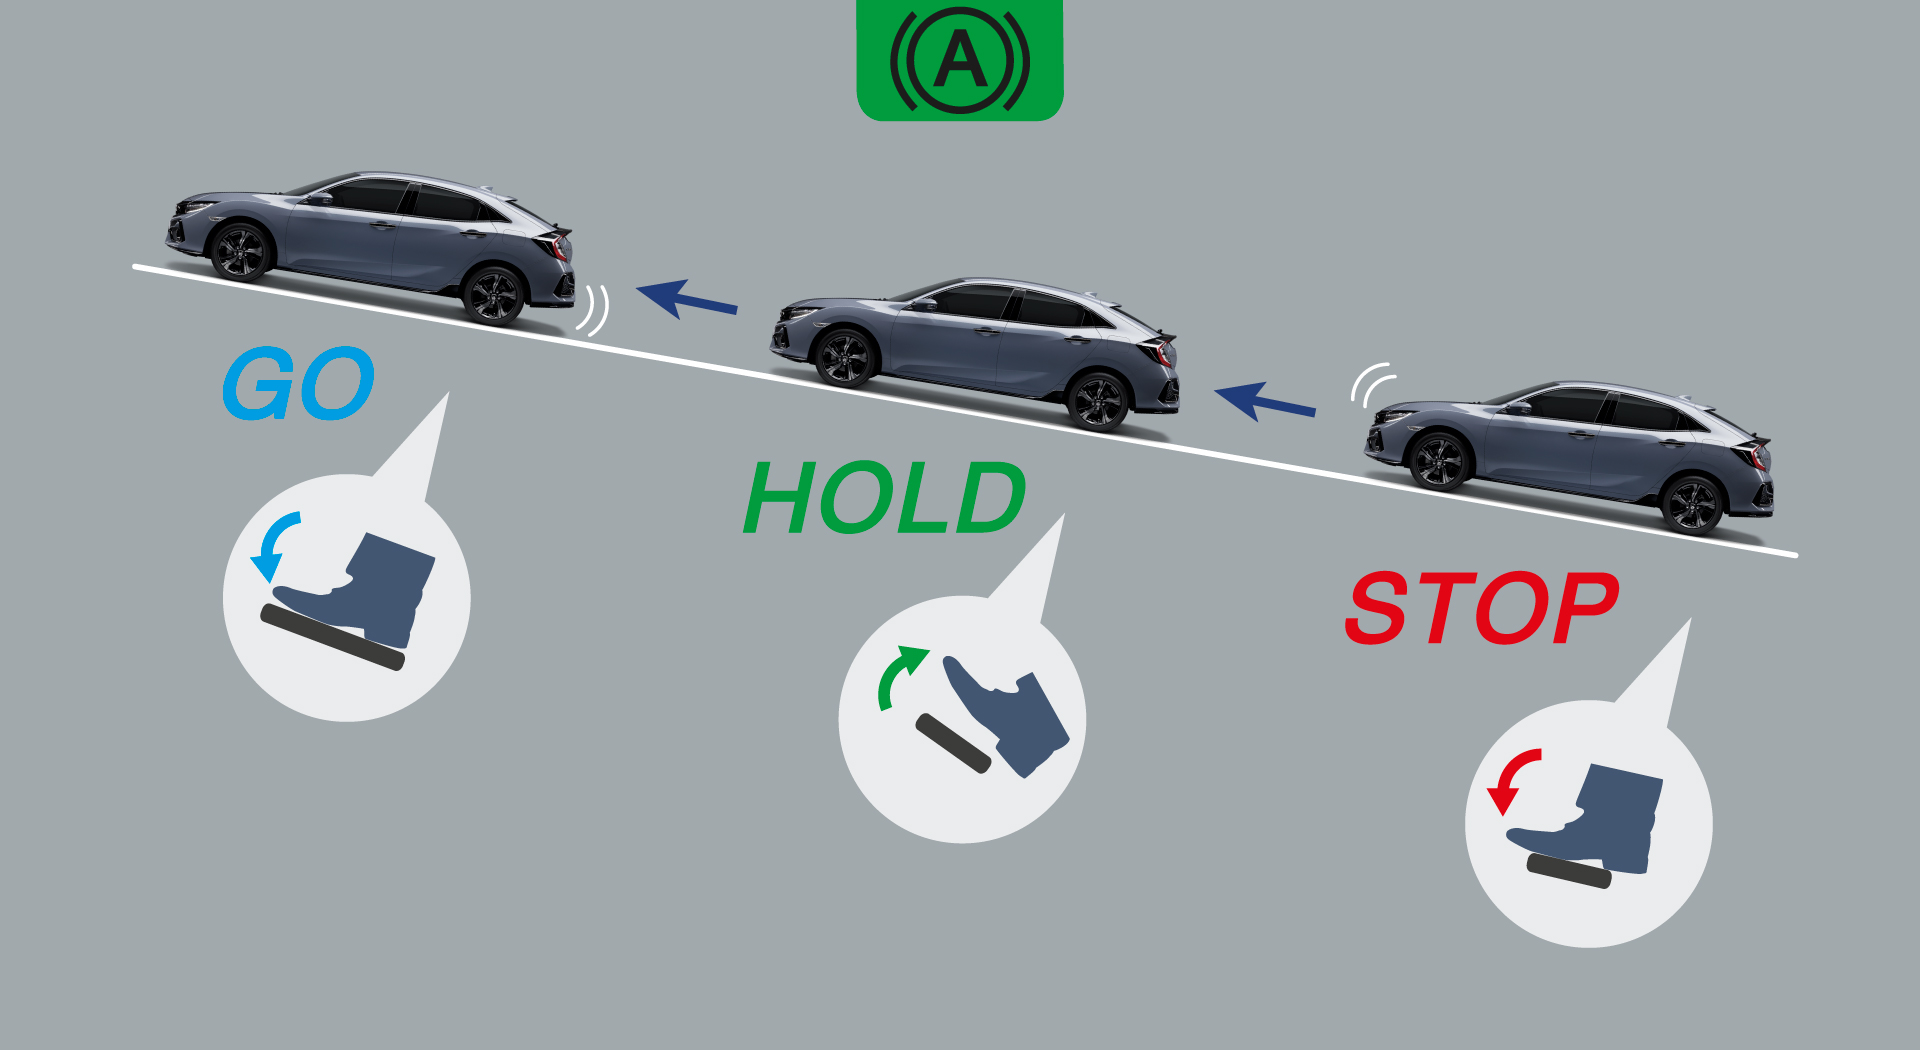 Auto Brake Hold ระบบ Brake Hold อัตโนมัติ เมื่อกดปุ่มเปิดให้ระบบทำงาน ระบบจะทำการหน่วงเบรกต่อโดยอัตโนมัติหลังจากเหยียบเบรกให้รถหยุดนิ่ง